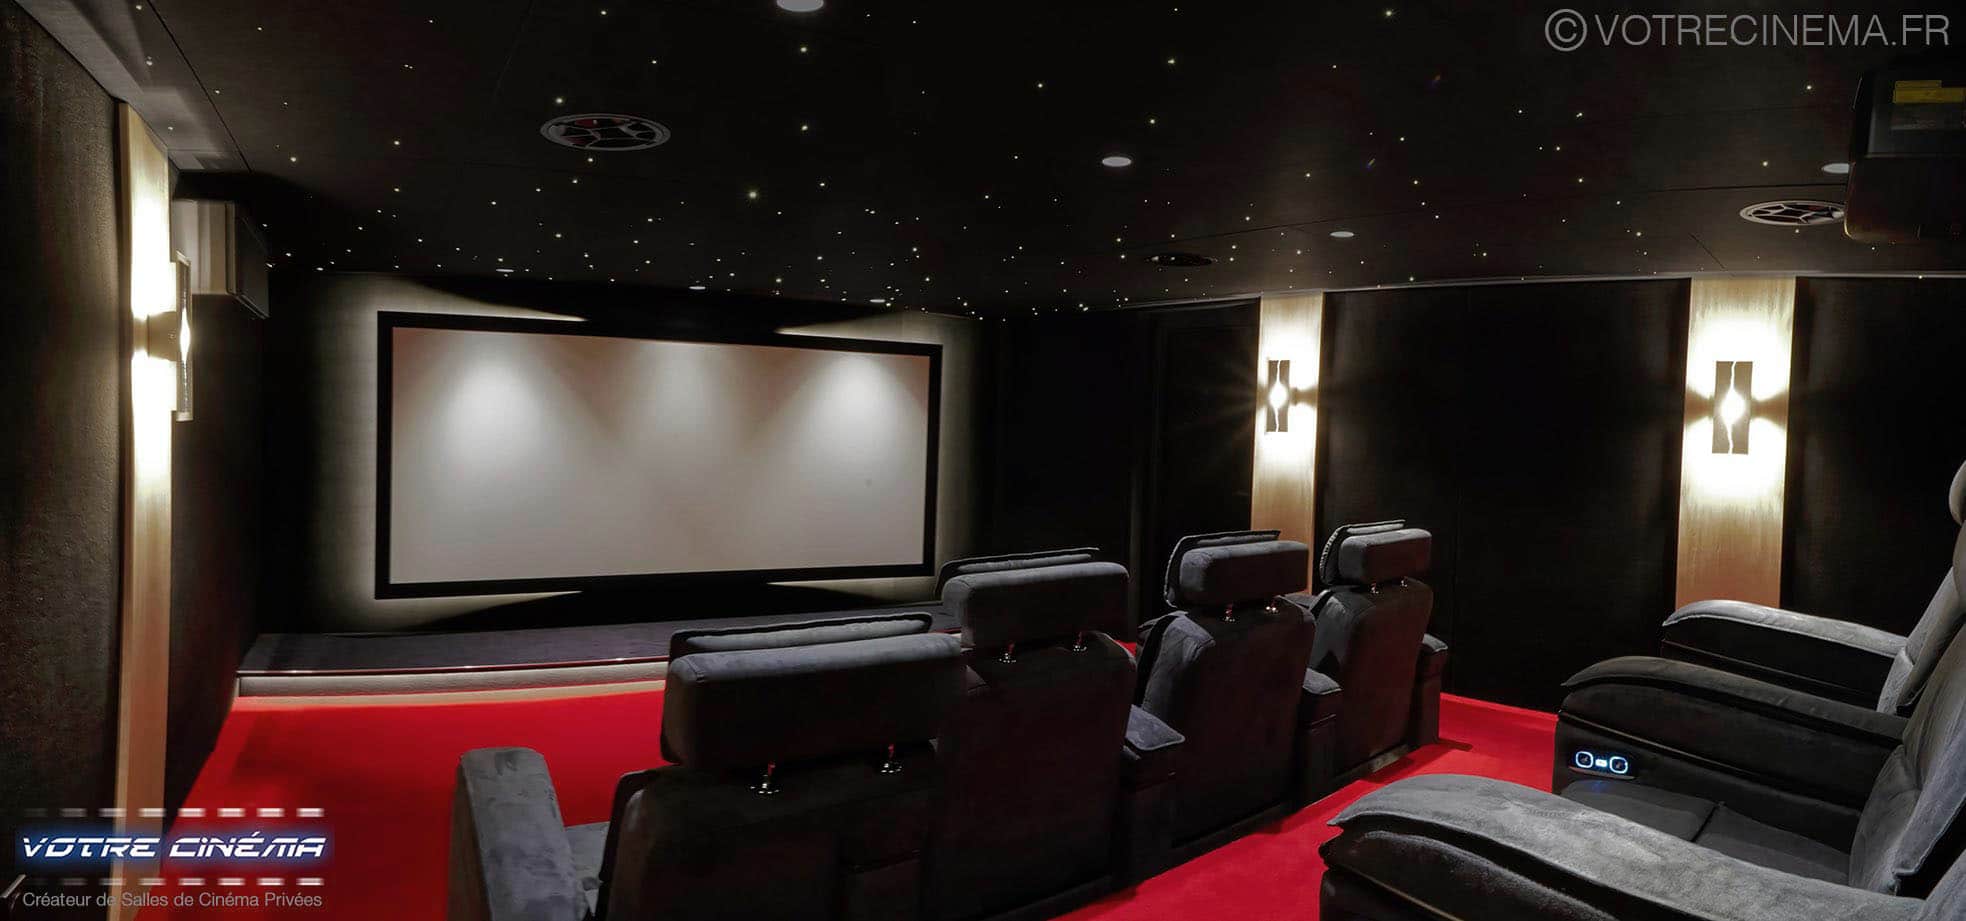 Salle cinéma privée à Mulhouse